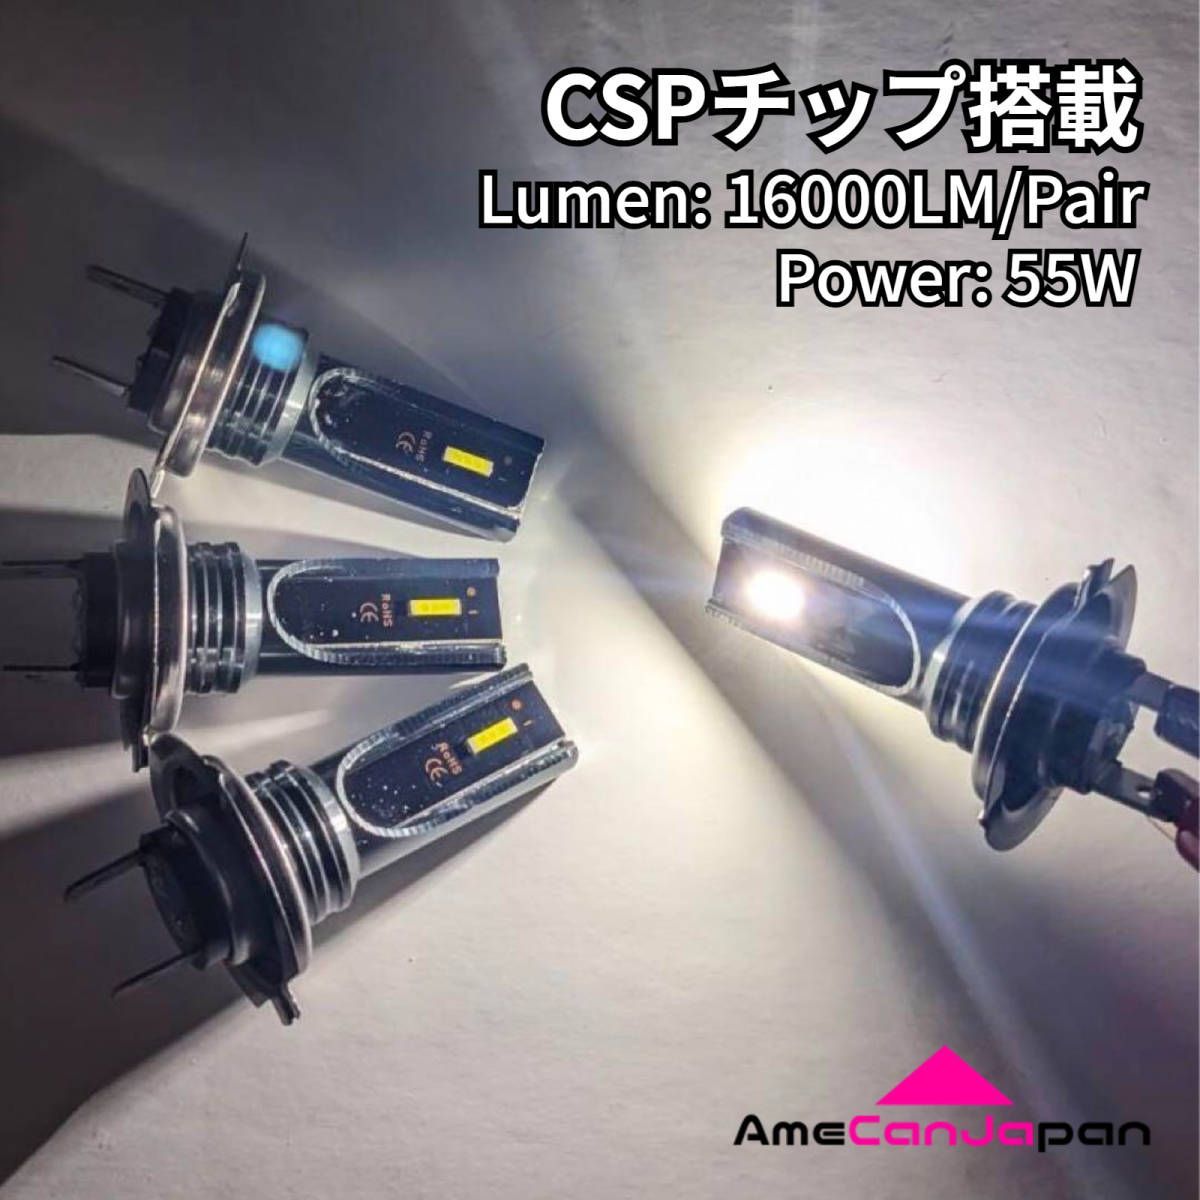 AmeCanJapan KAWASAKI ER-6f EX650C 適合 H7 LED ヘッドライト バイク用 Hi LOW ホワイト 2灯 爆光  CSPチップ搭載 パーツ バイク用品 - メルカリ